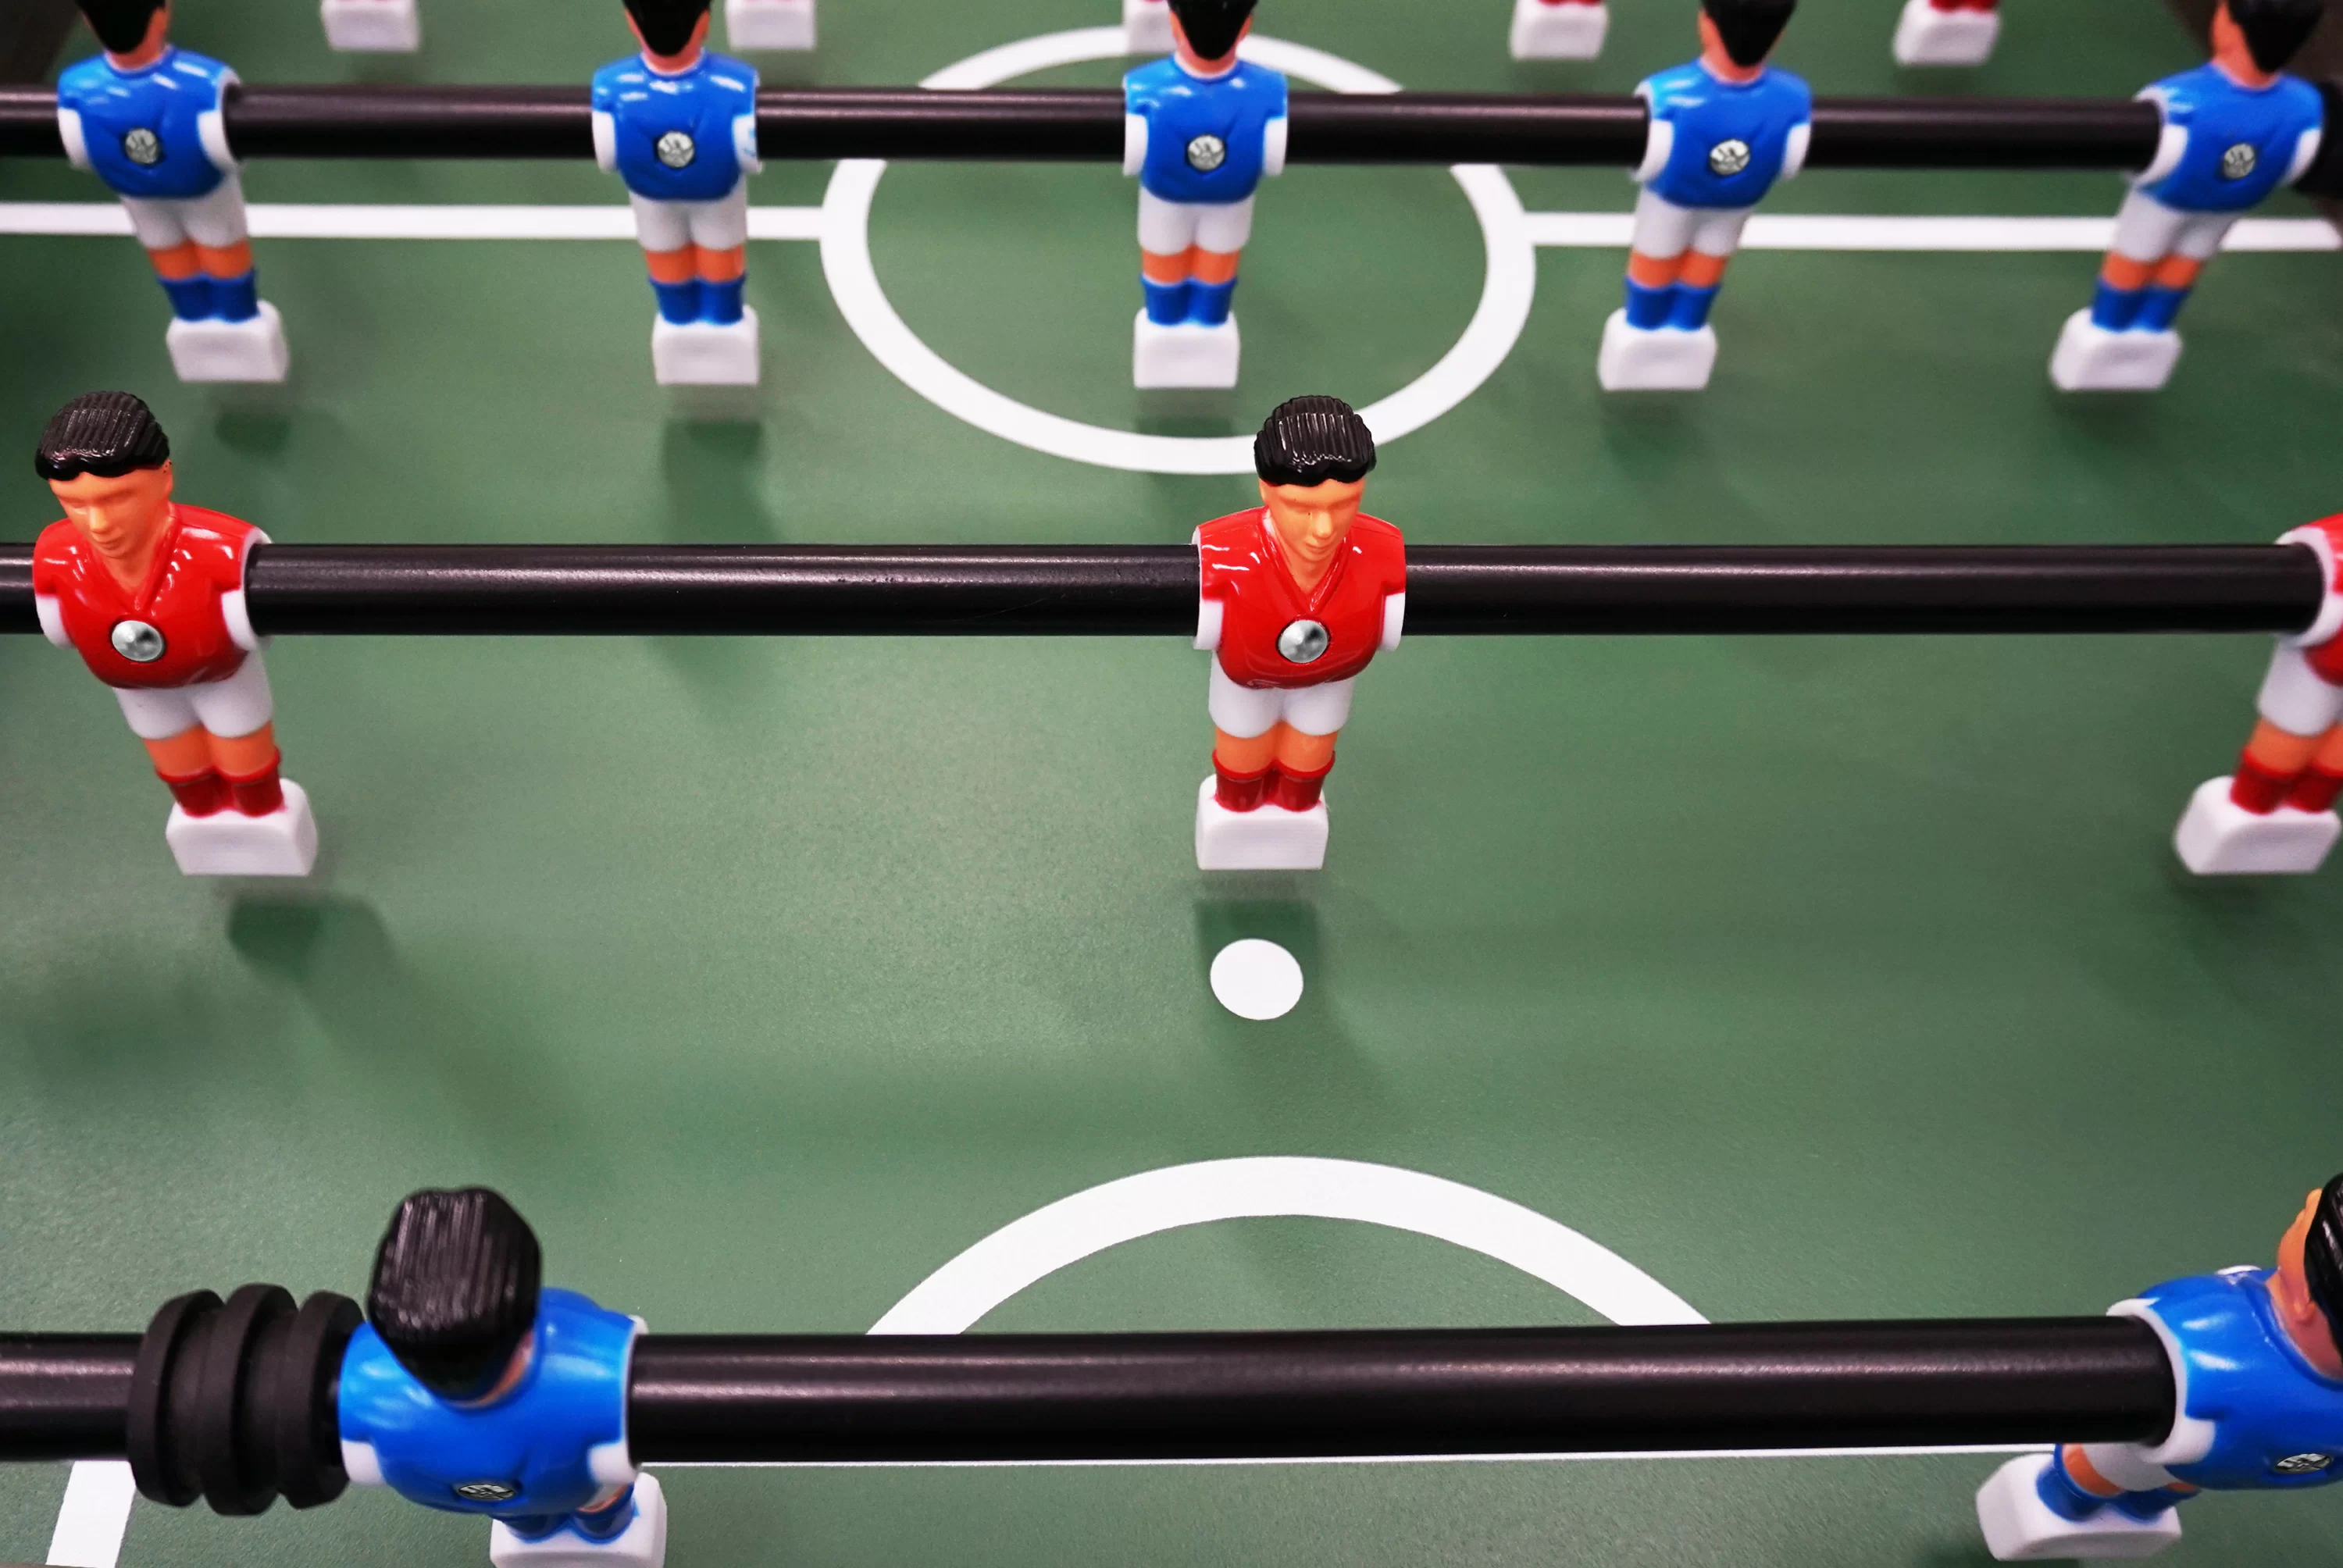 Реальное фото Настольный футбол / Кикер BFG Tournament Core 5 (Анкор) от магазина СпортСЕ